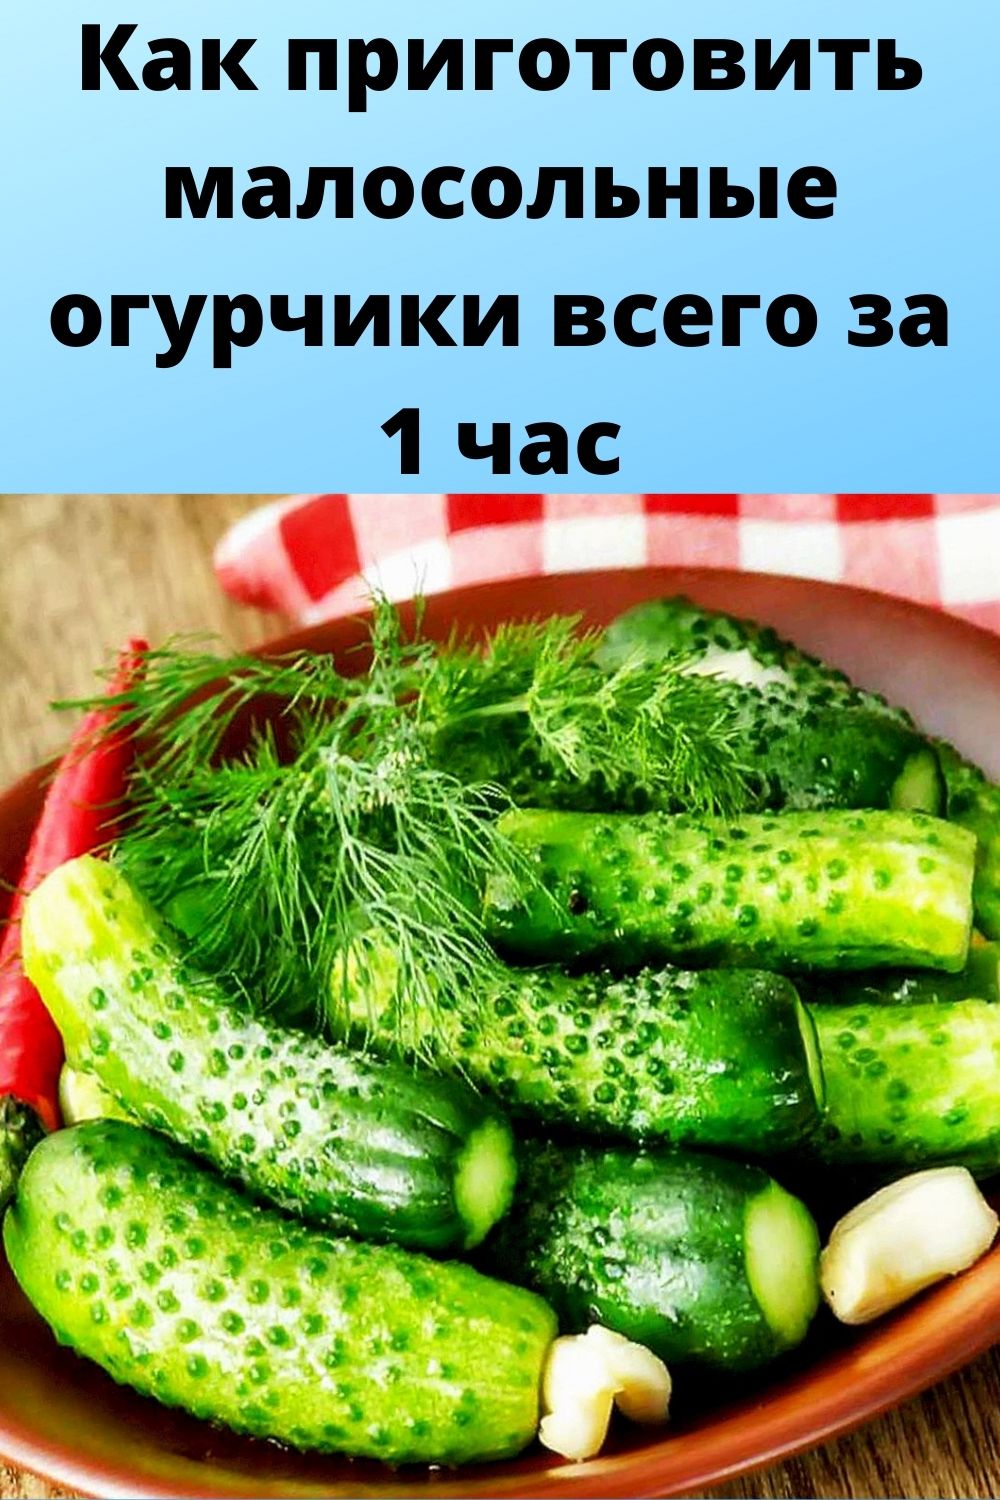 Ника белоцерковская рецепты малосольные огурцы